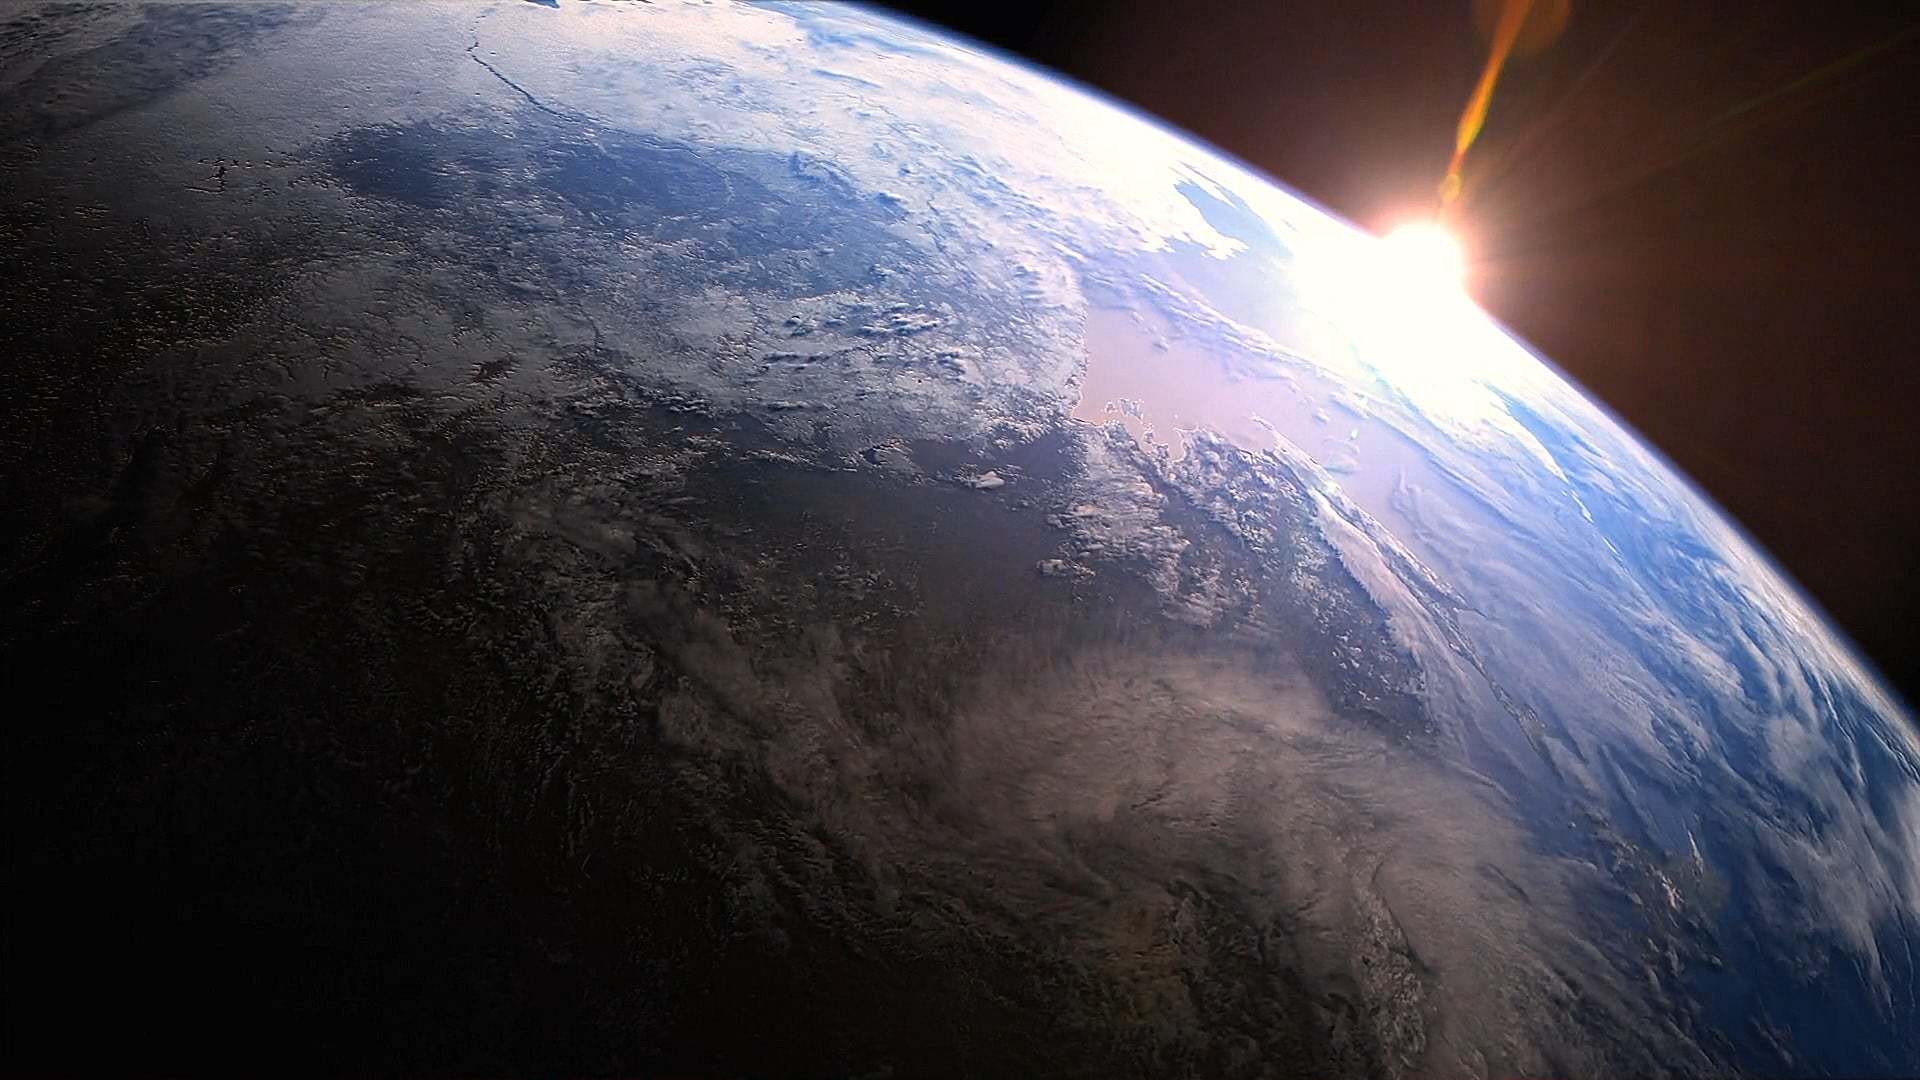 პლანეტა დედამიწა / Planet Earth